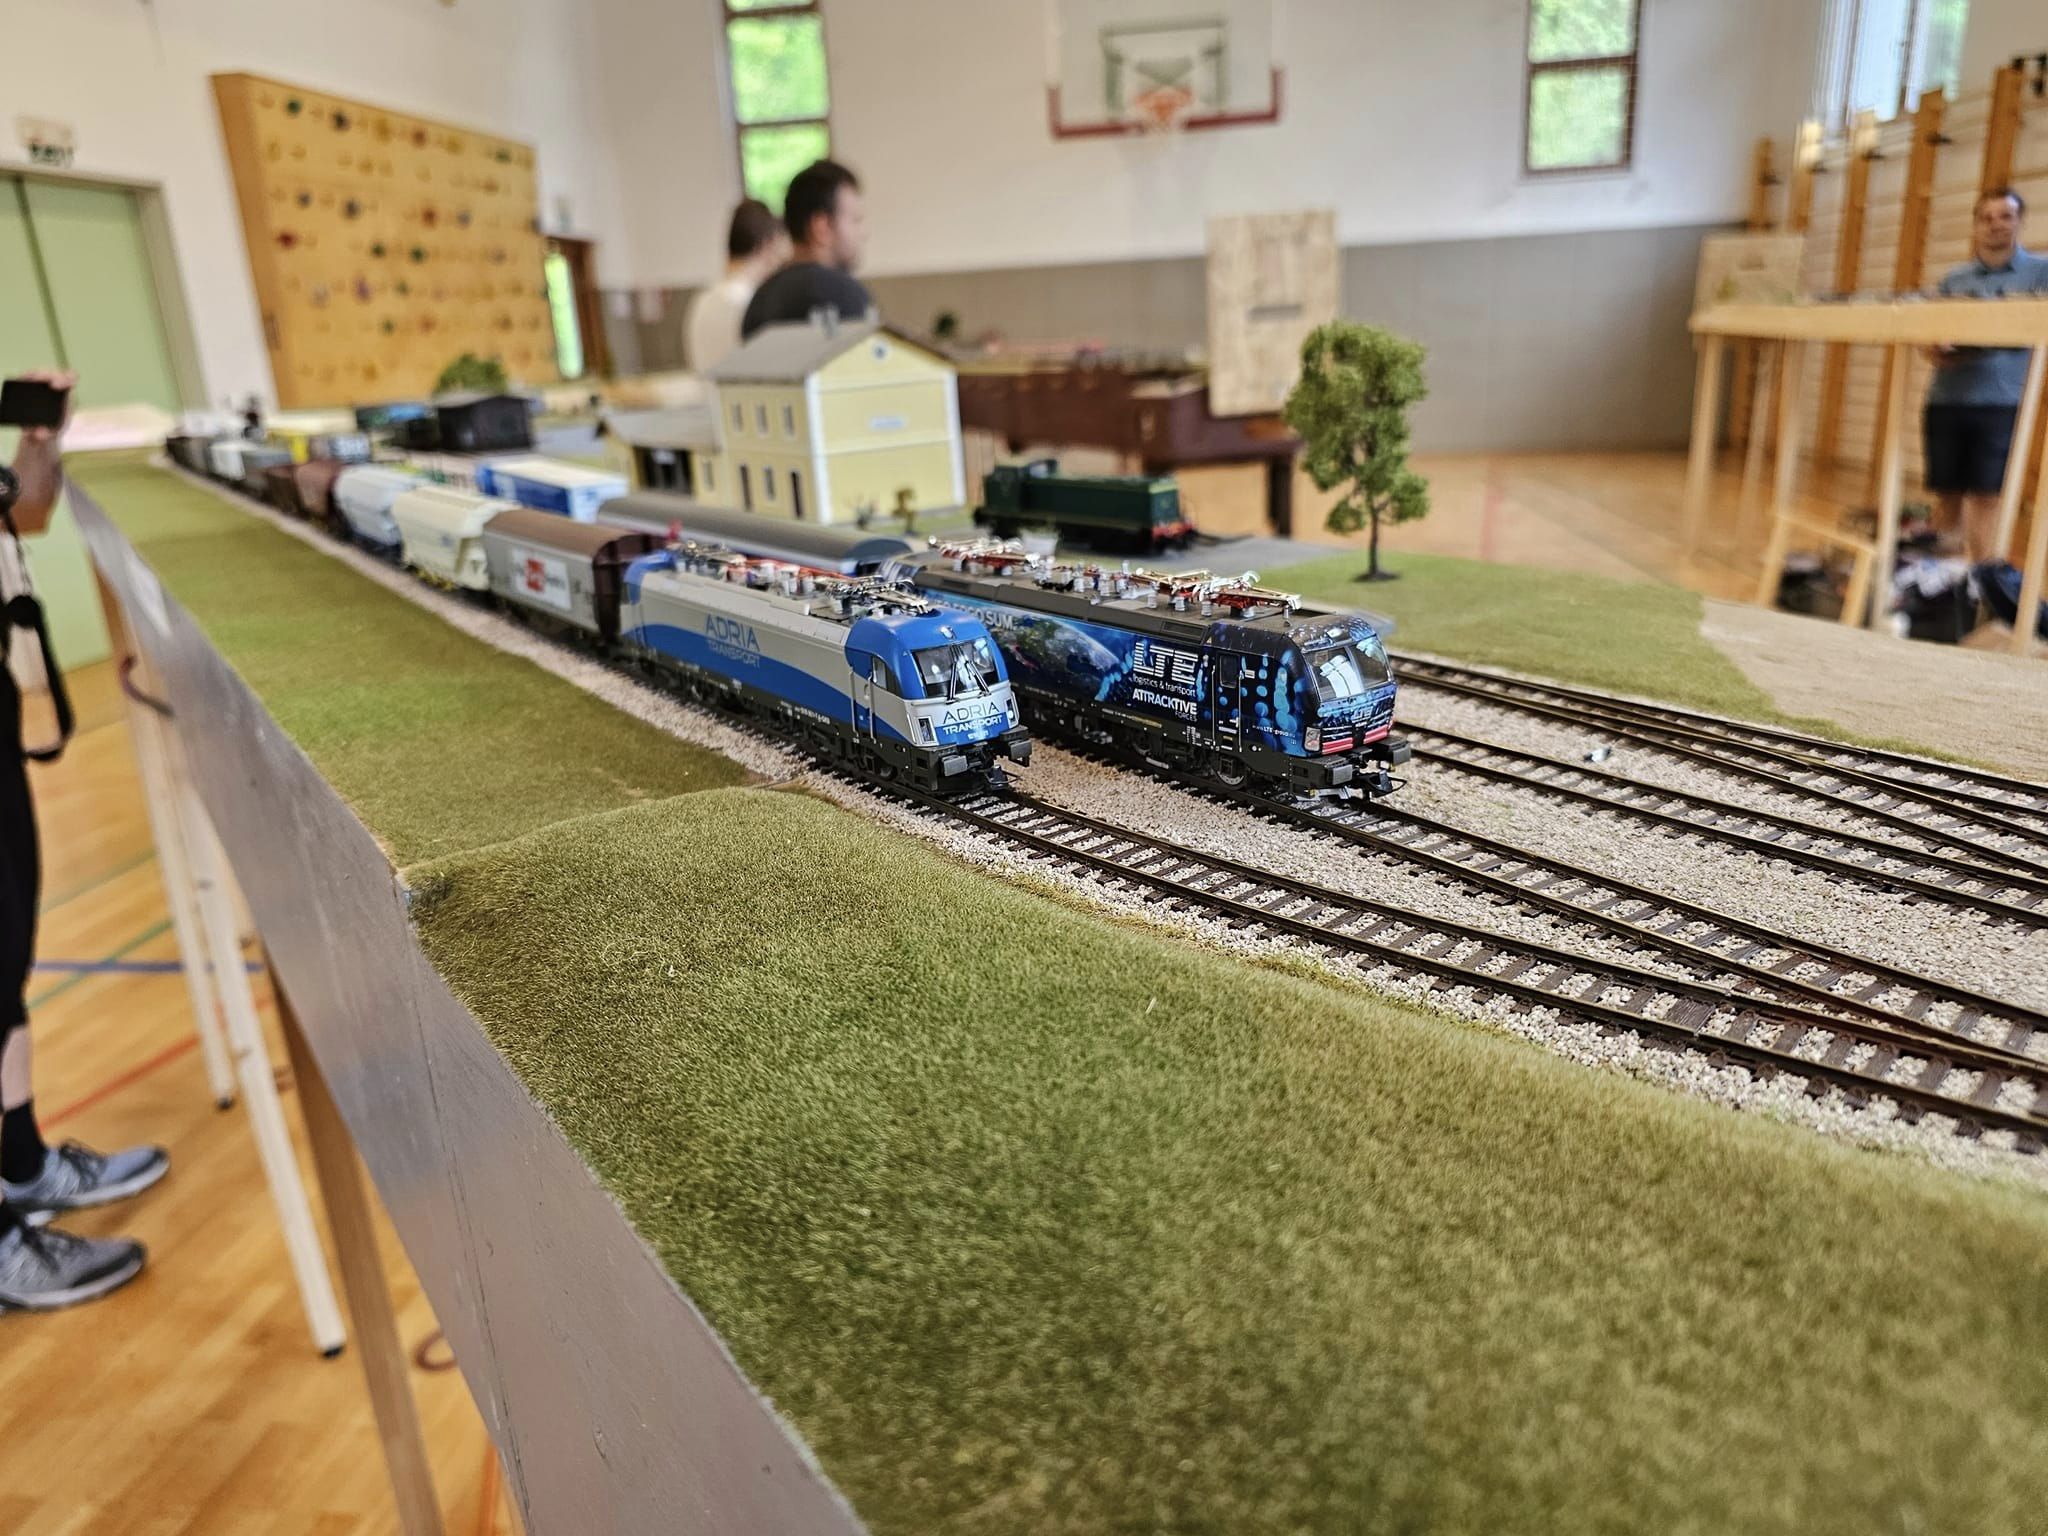 V Pesnici boste lahko videli vožnje različnih vlakov po modulni maketi